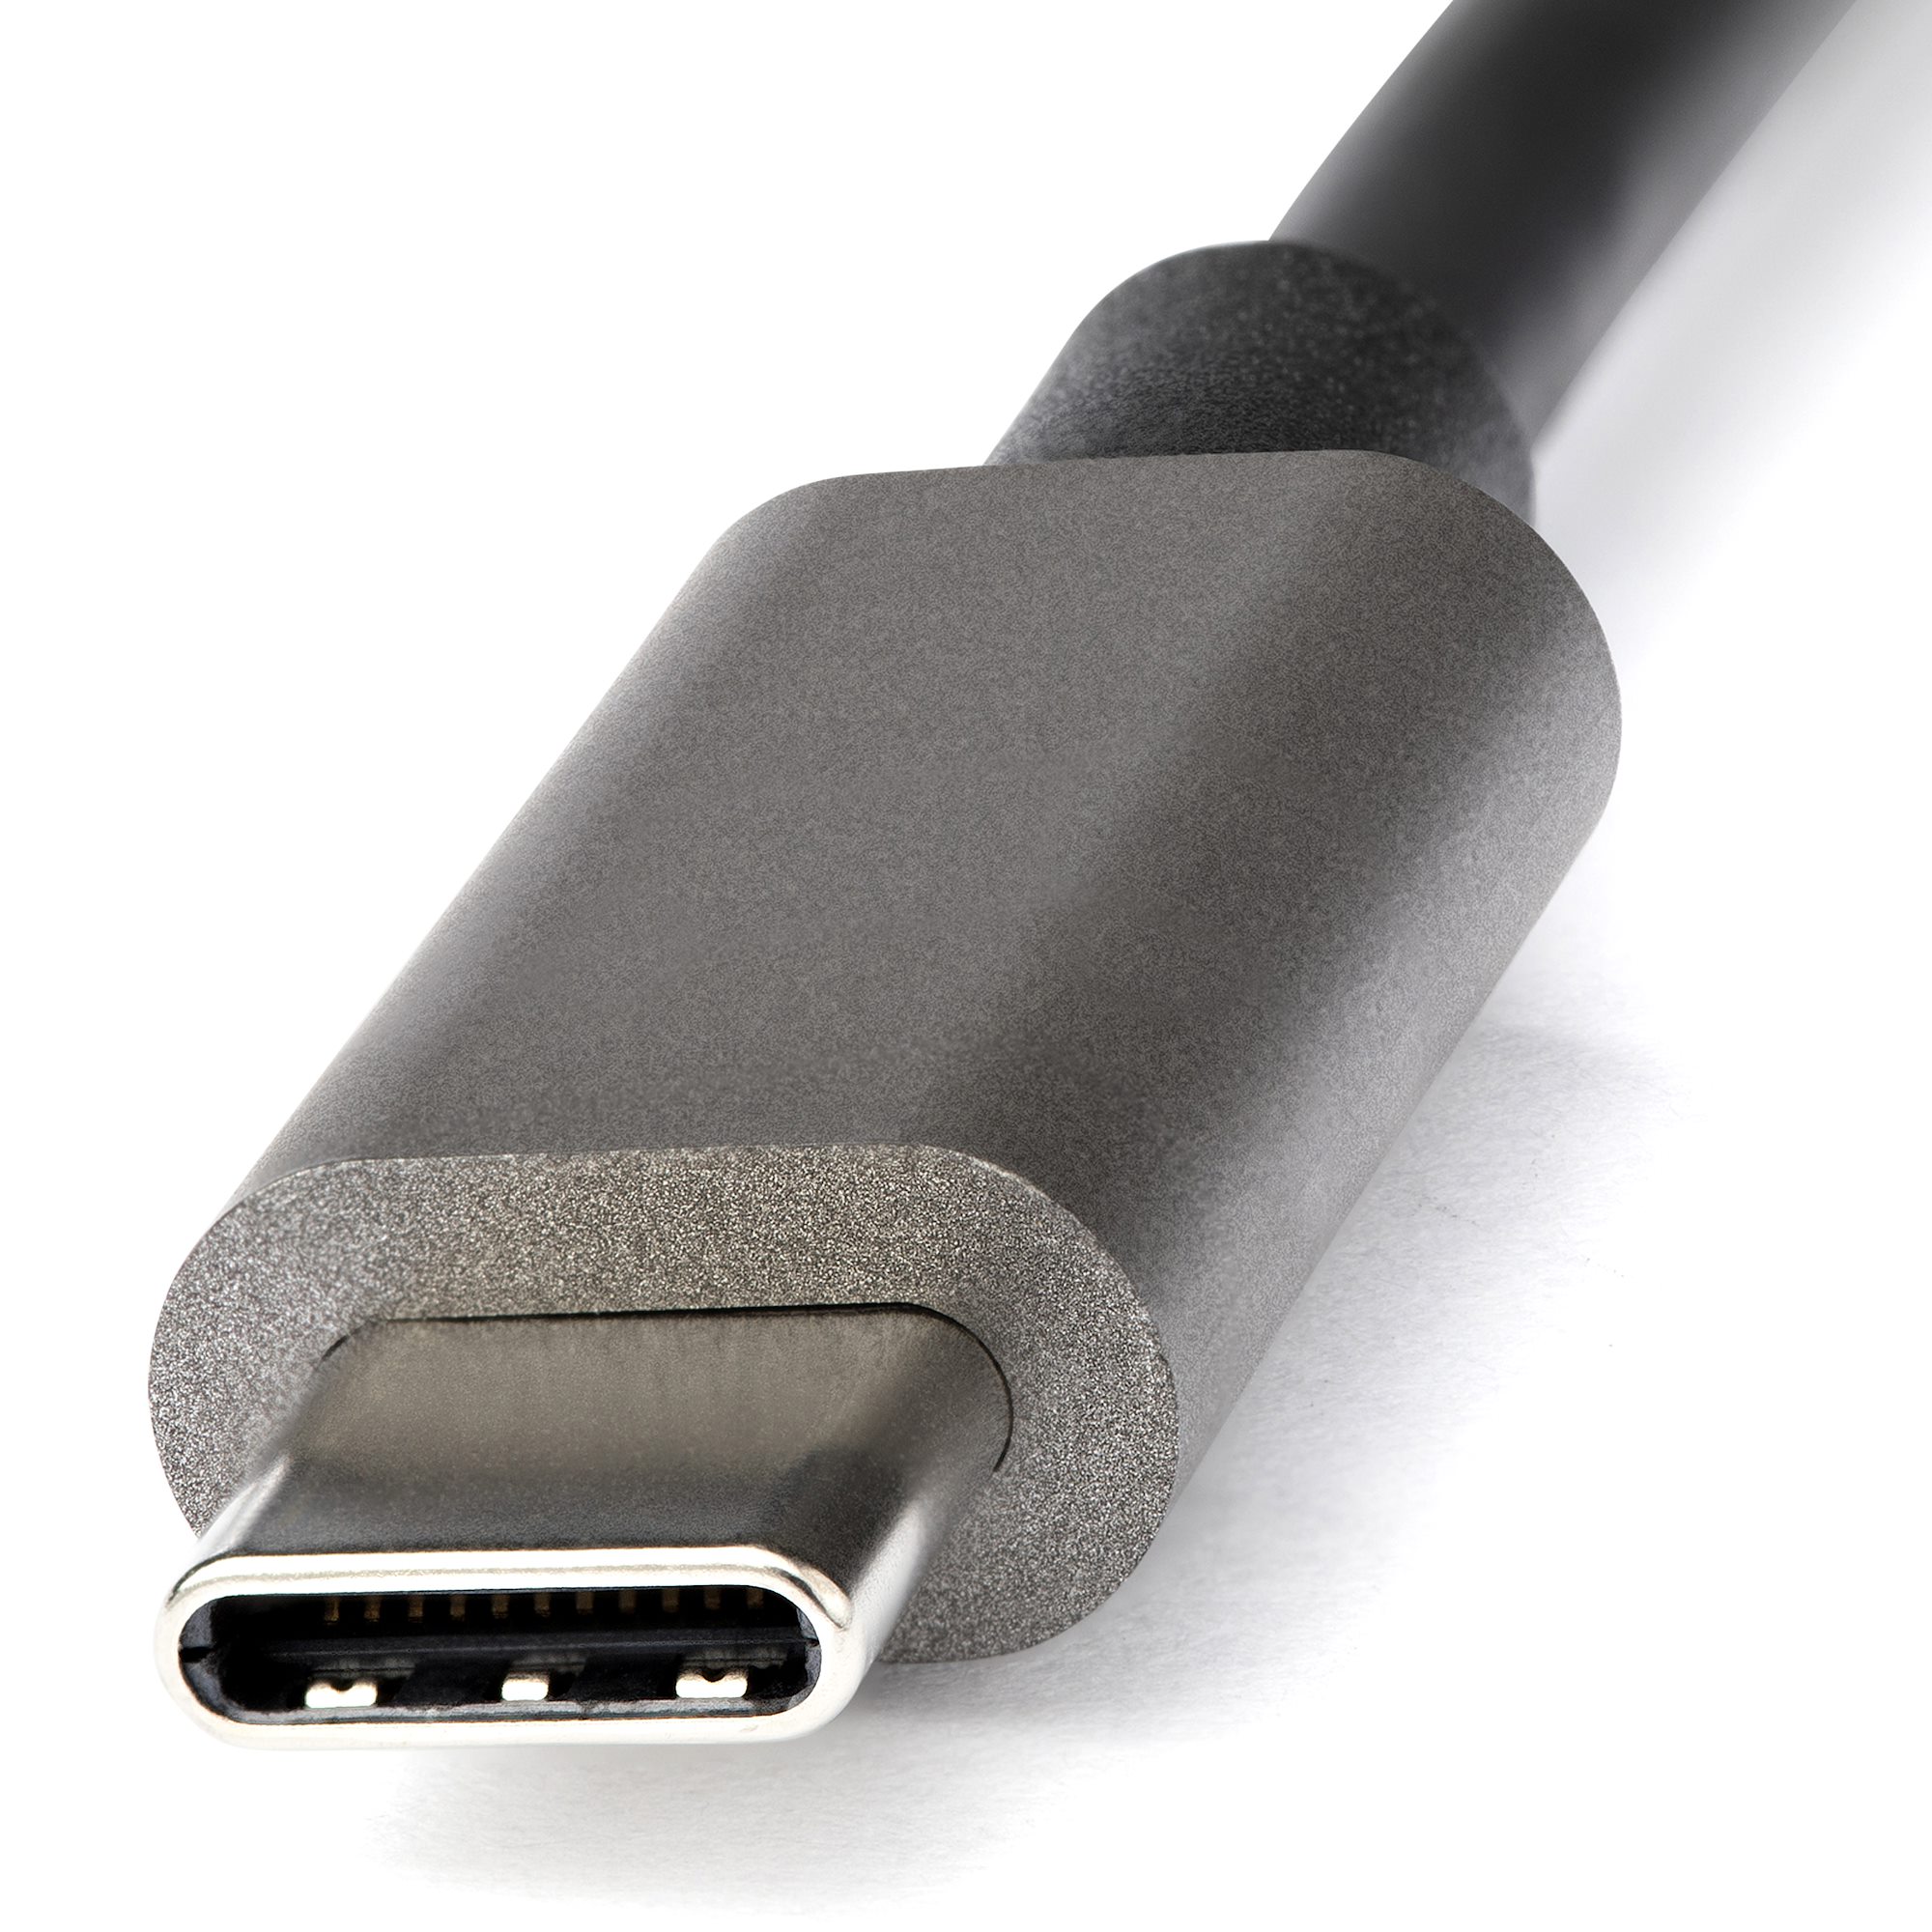 El cable USB C a HDMI 4K60Hz/2K144Hz muestra el aluminio